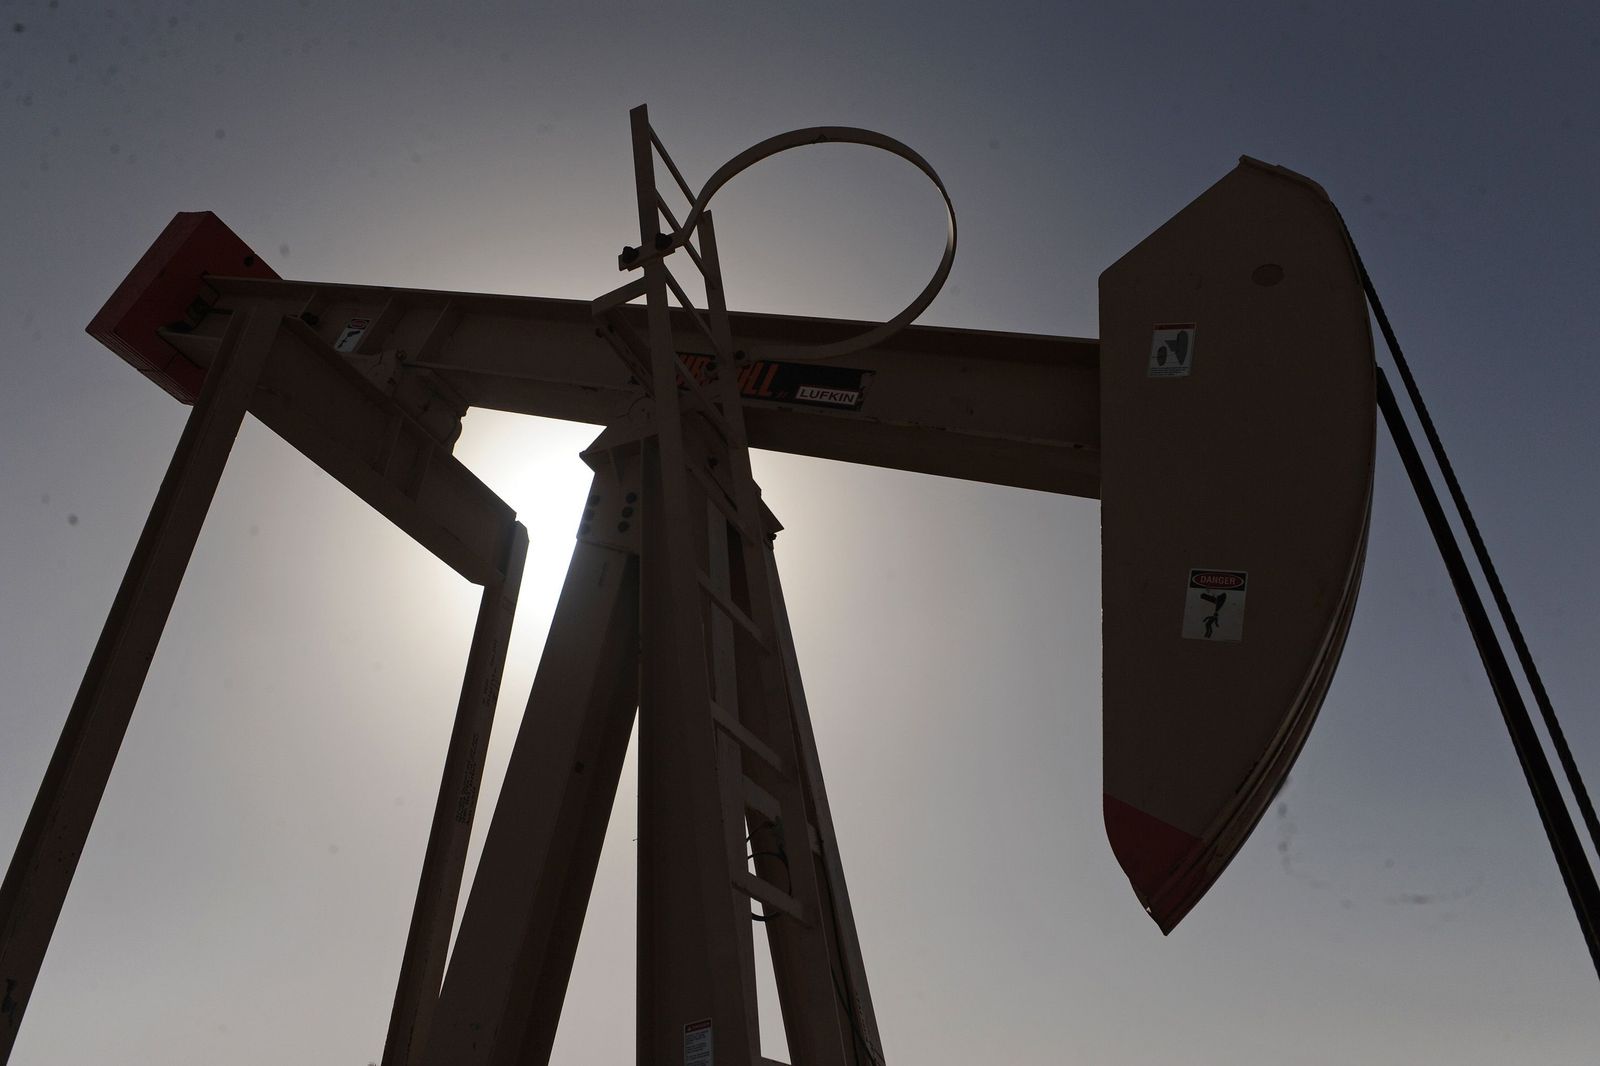 إنتاج ليبيا من النفط يرتفع إلى 1.2 مليون برميل يومياً بعد موجة تعثر